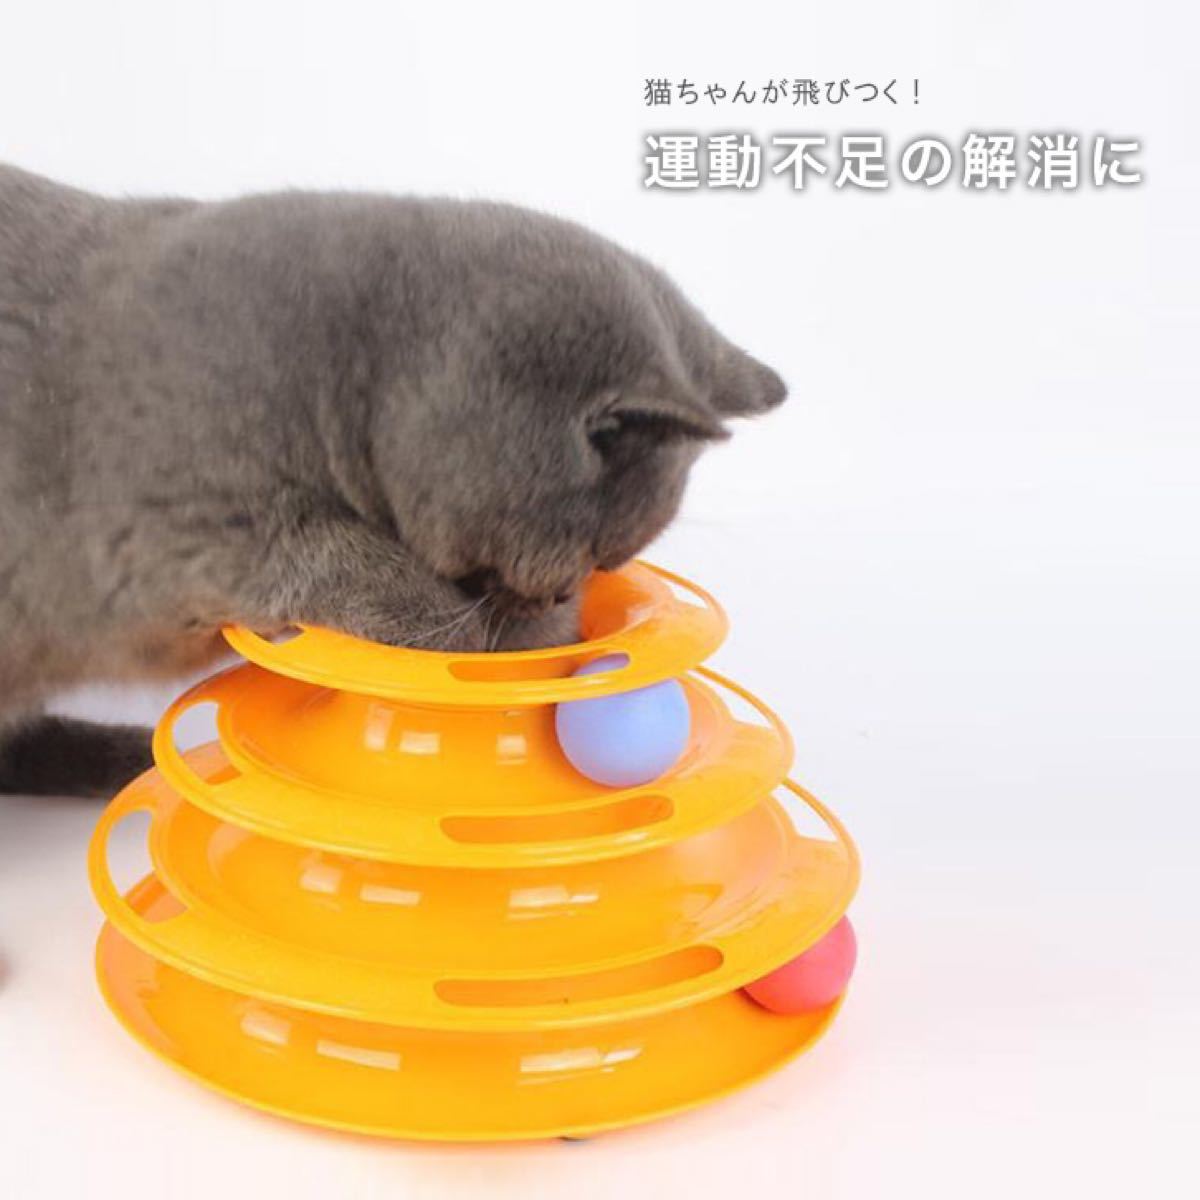 猫 おもちゃ らせん ボール 一人で遊べるおもちゃ 組立て式 知育おもちゃ 猫らせんボール ペット おもちゃ タワーボール  